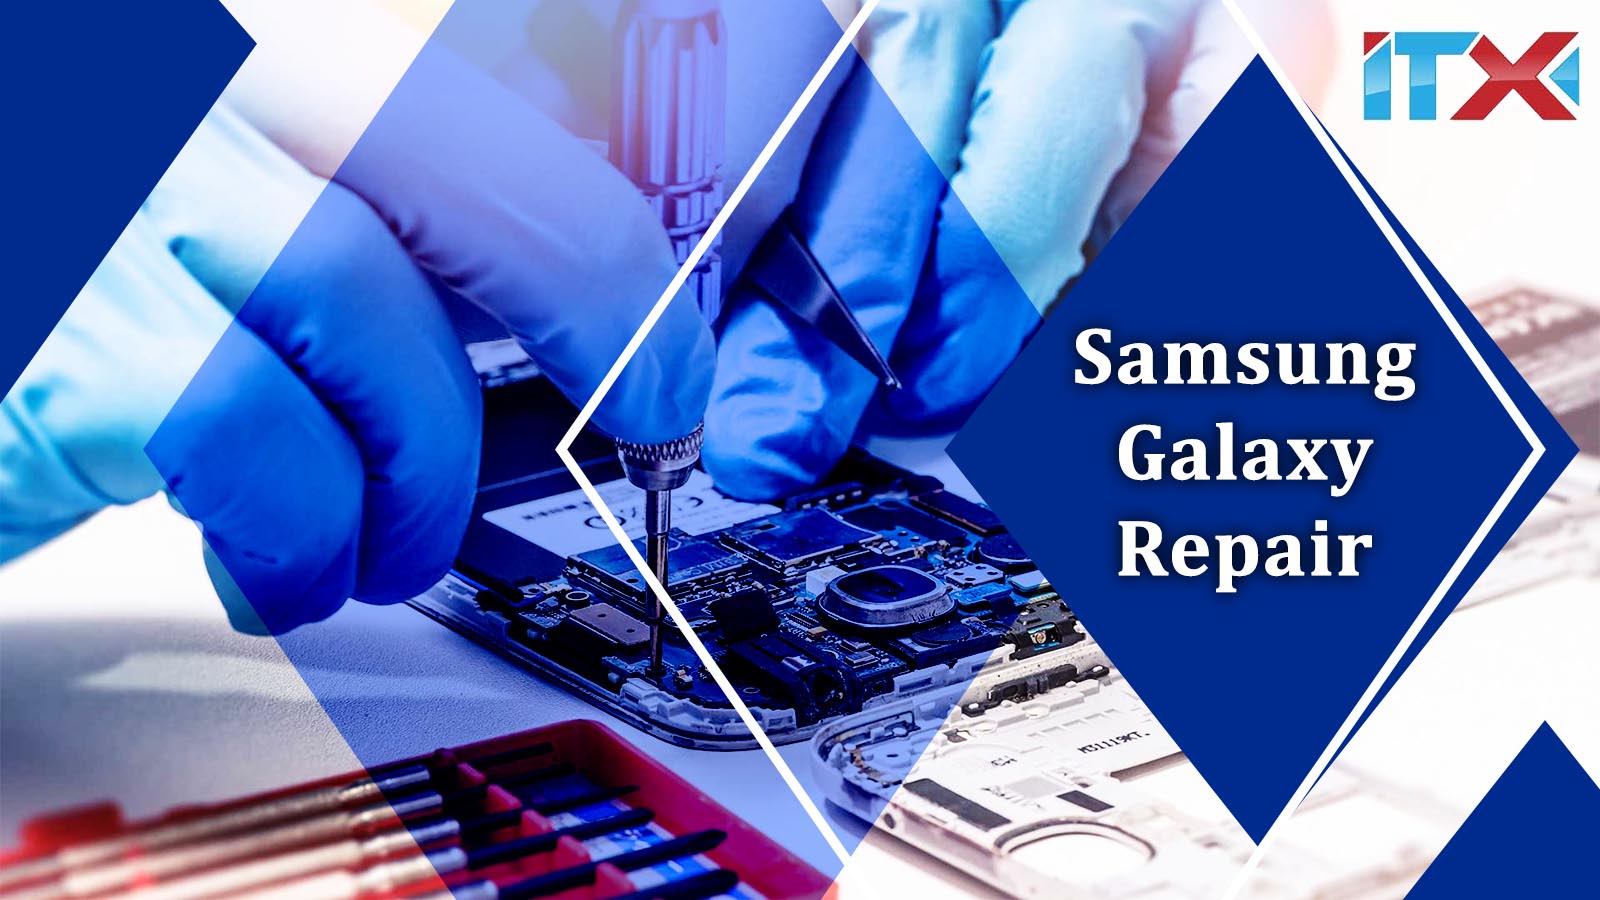 Samsung Galaxy Repair near Me